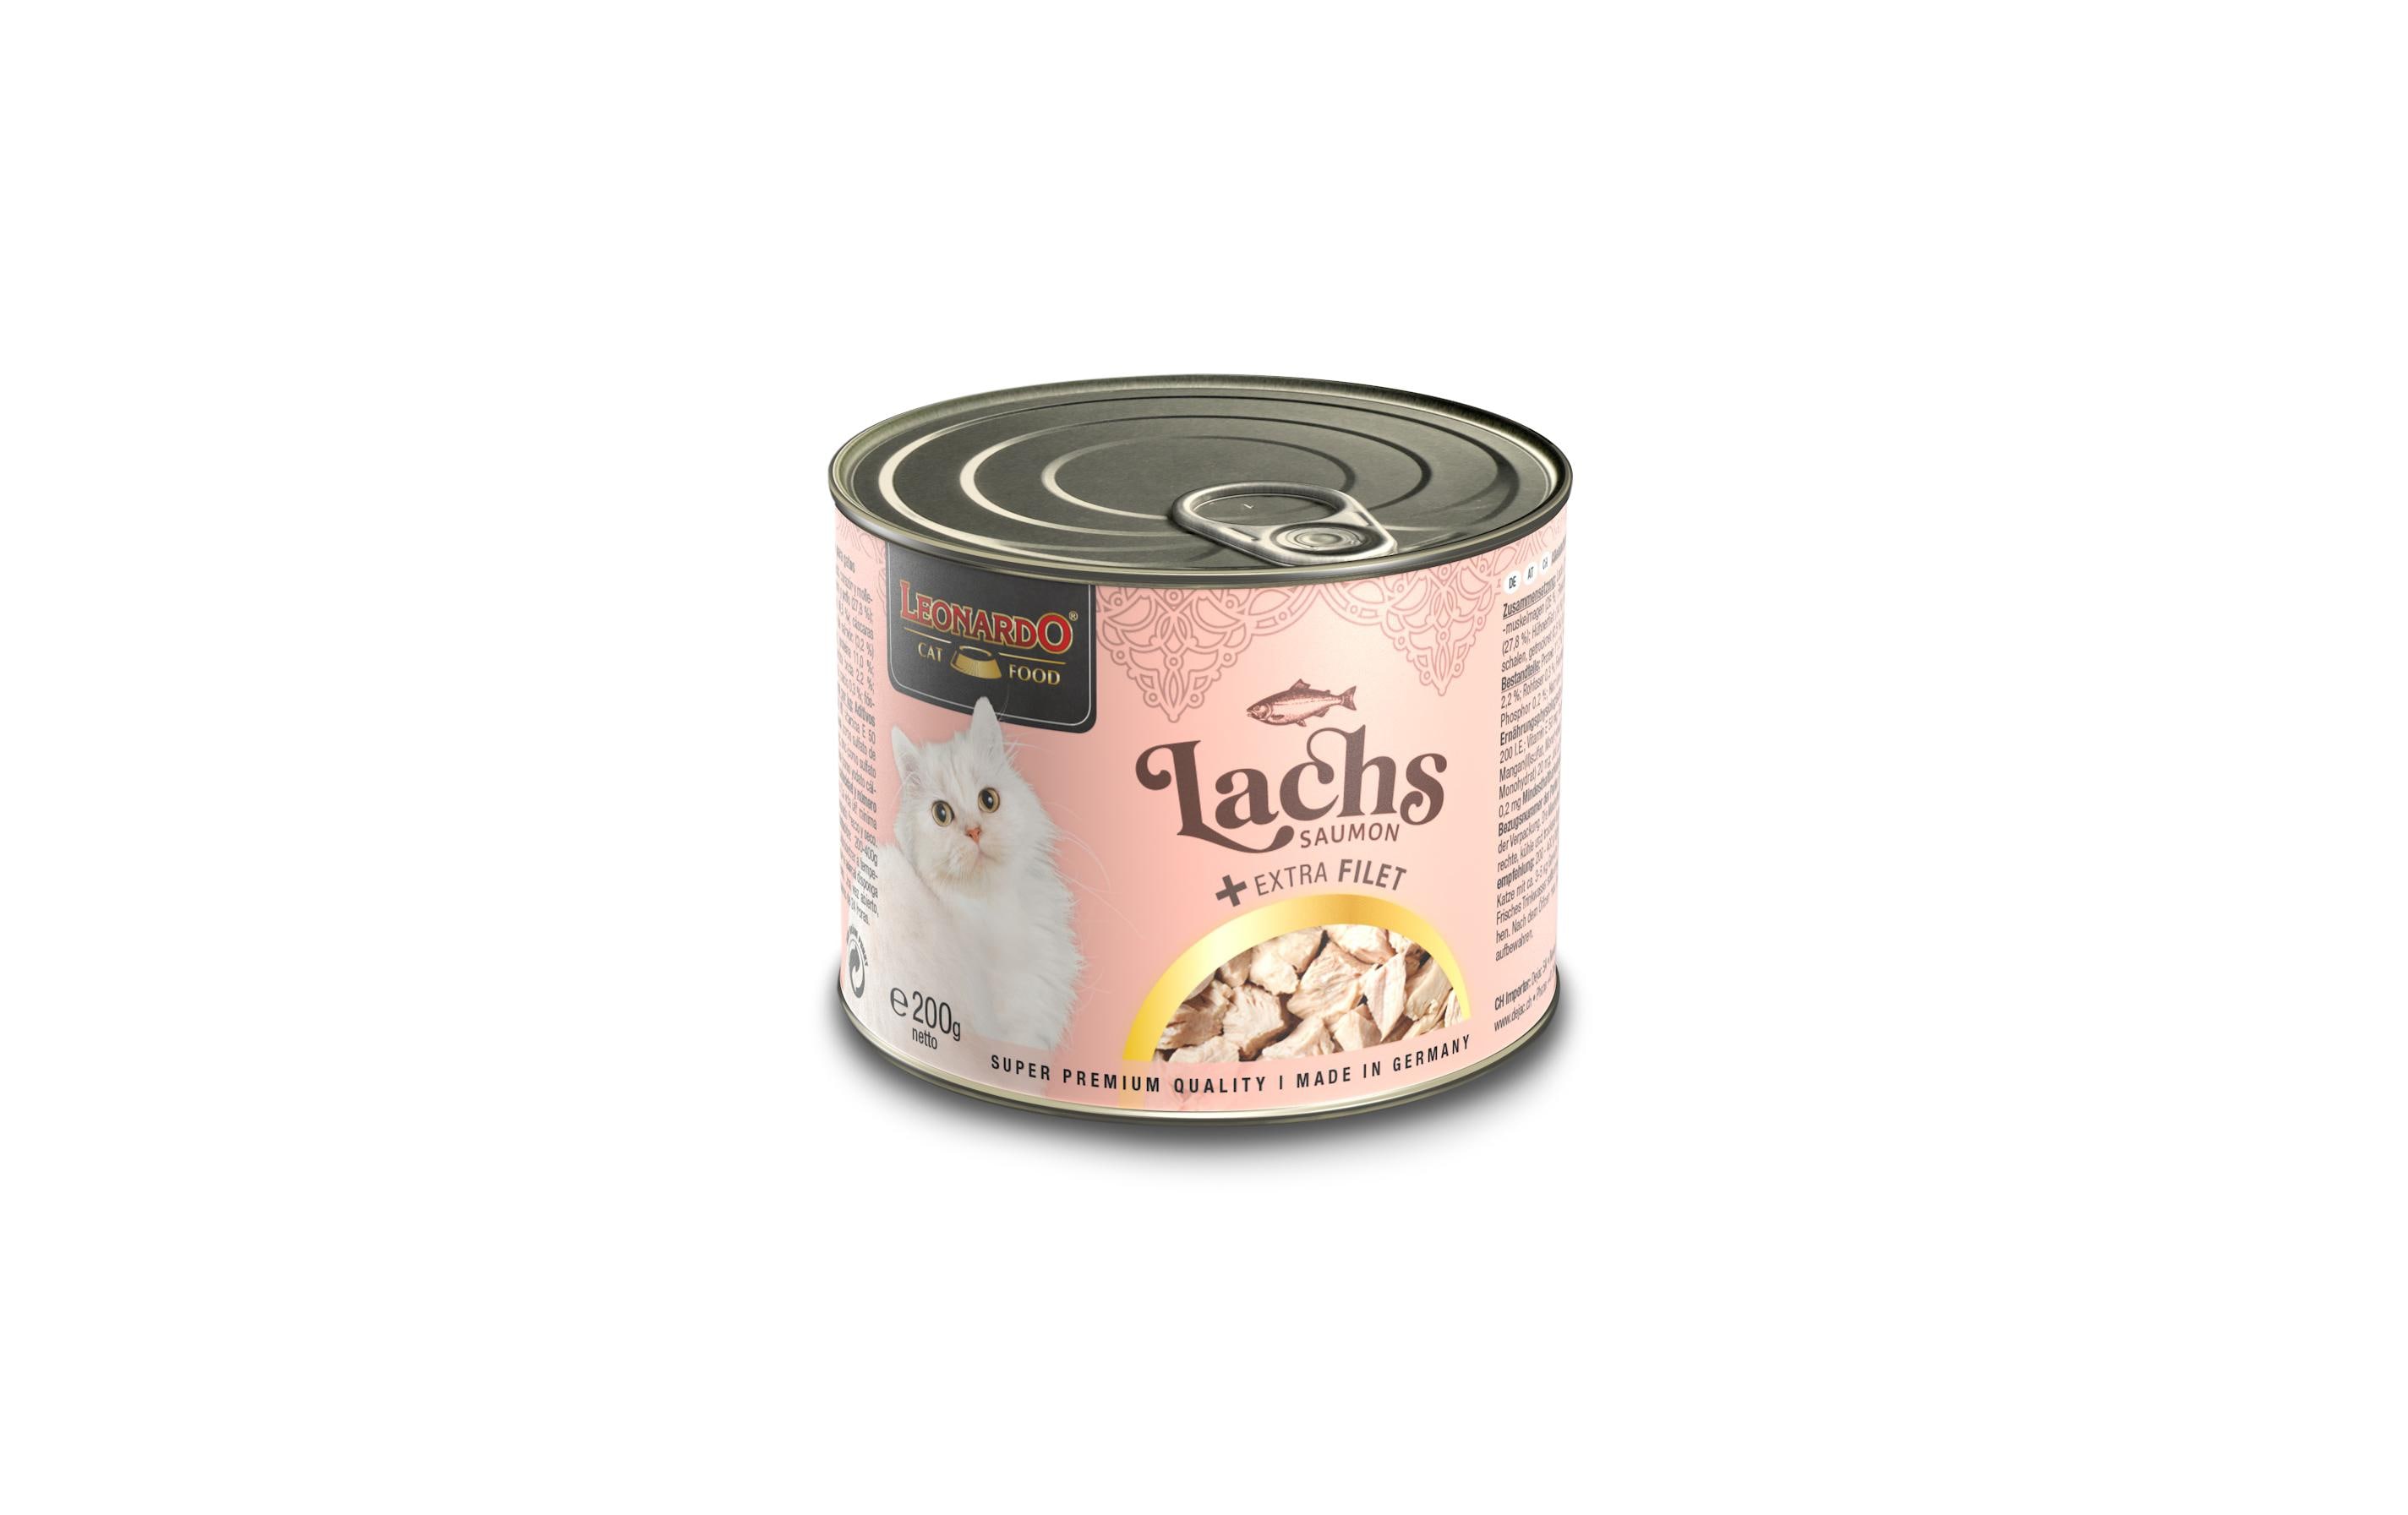 Leonardo Cat Food Nassfutter Lachs + Extra Filet, 200 g